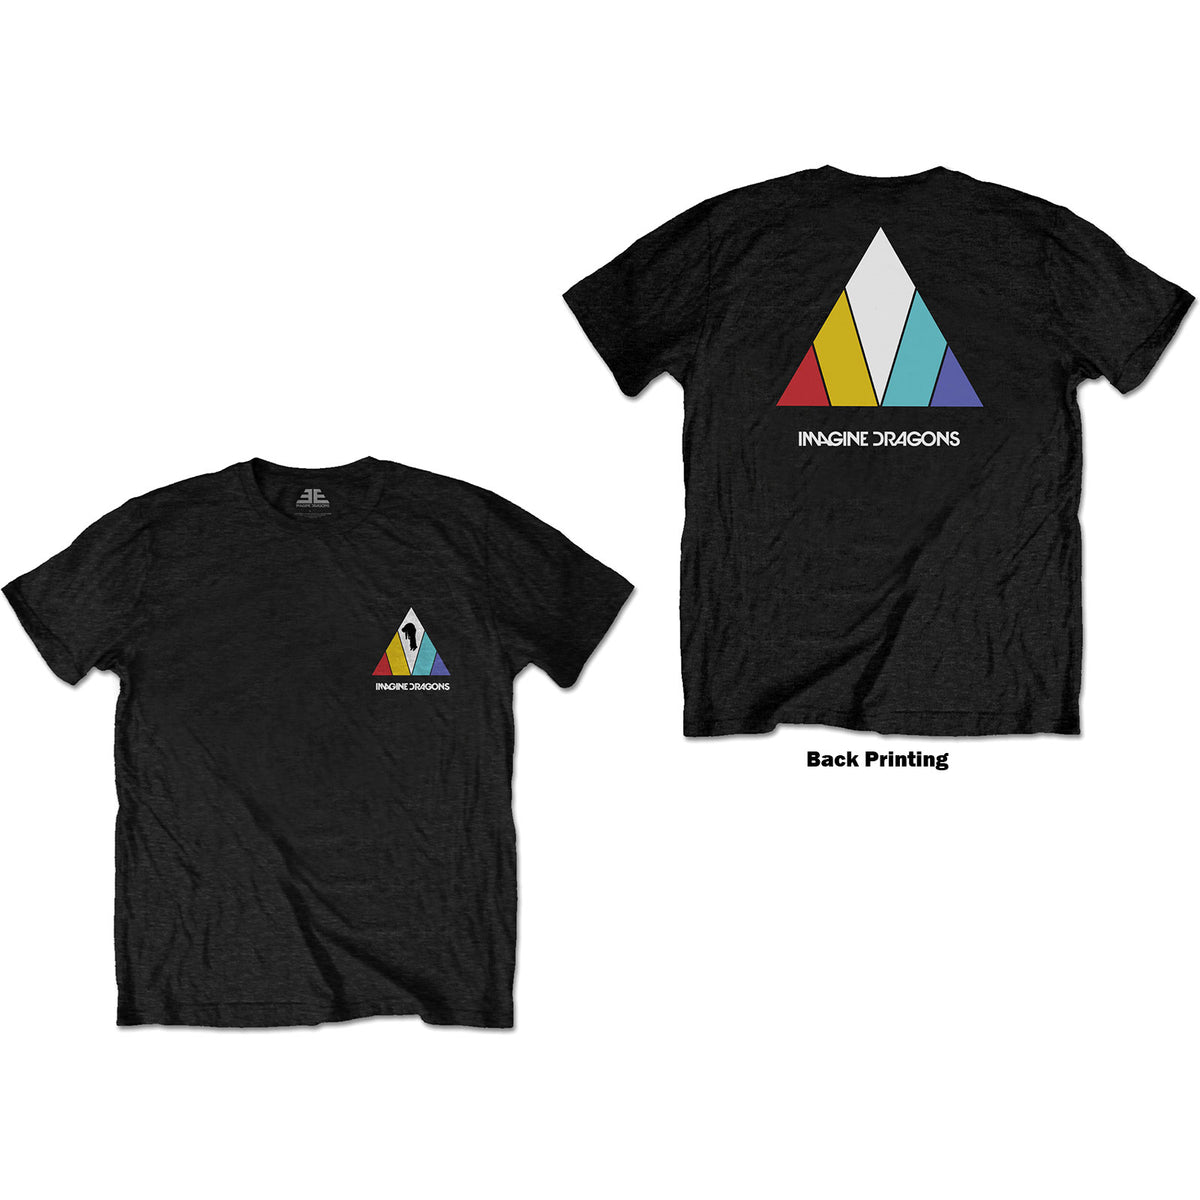 Imagine Dragons T-Shirt – Evolve-Logo (Rückendruck) – Unisex, offizielles Lizenzdesign